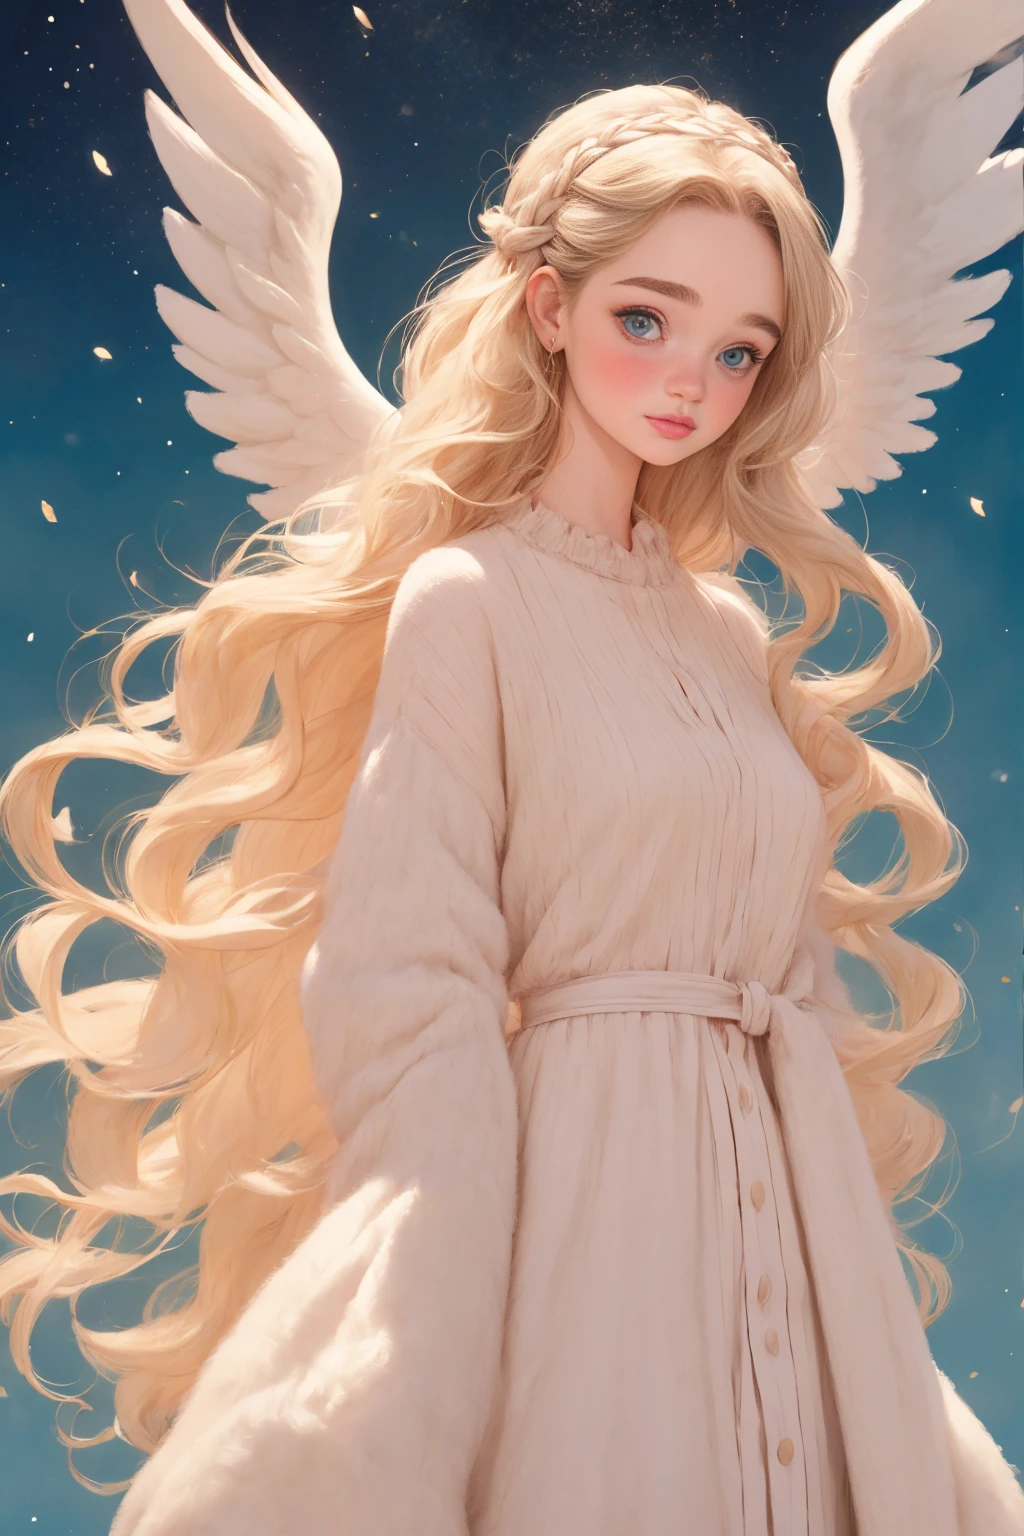 艾米莉亞·克拉克, 天使 big white wings, 通過盧比歐, 长辫子头发,(8K, 最好的品質, 傑作:1.2),(最好的品質:1.0), (超高解析度:1.0), 水彩, 一個漂亮的女人, 肩膀, 髮帶, 透過艾格尼絲·塞西爾, 全身, 極其明亮閃亮的設計, 柔和的色彩, 傑作, (最好的品質:1.2), [:錯綜複雜的細節:0.2], 1 名女孩, 天使, 天使 wings, 白色褶邊, (白天的天空), 明亮的光環, 高度集中, 爆裂能量, 神秘符號, 明亮的斑點,